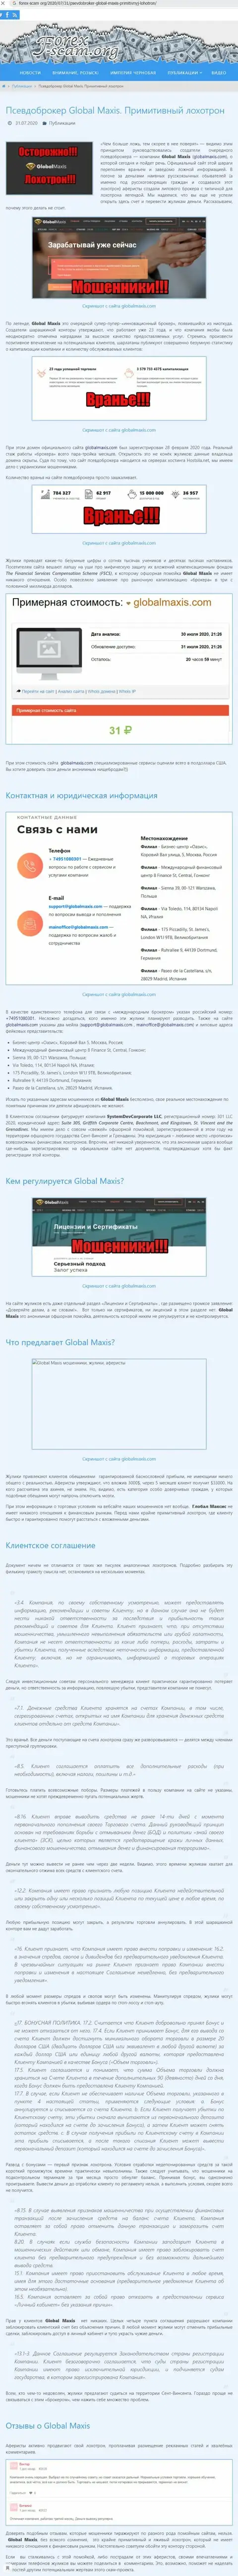 МОШЕННИЧЕСТВО, ЛОХОТРОН и ВРАНЬЕ - обзор мошеннических действий компании Глобал Максис